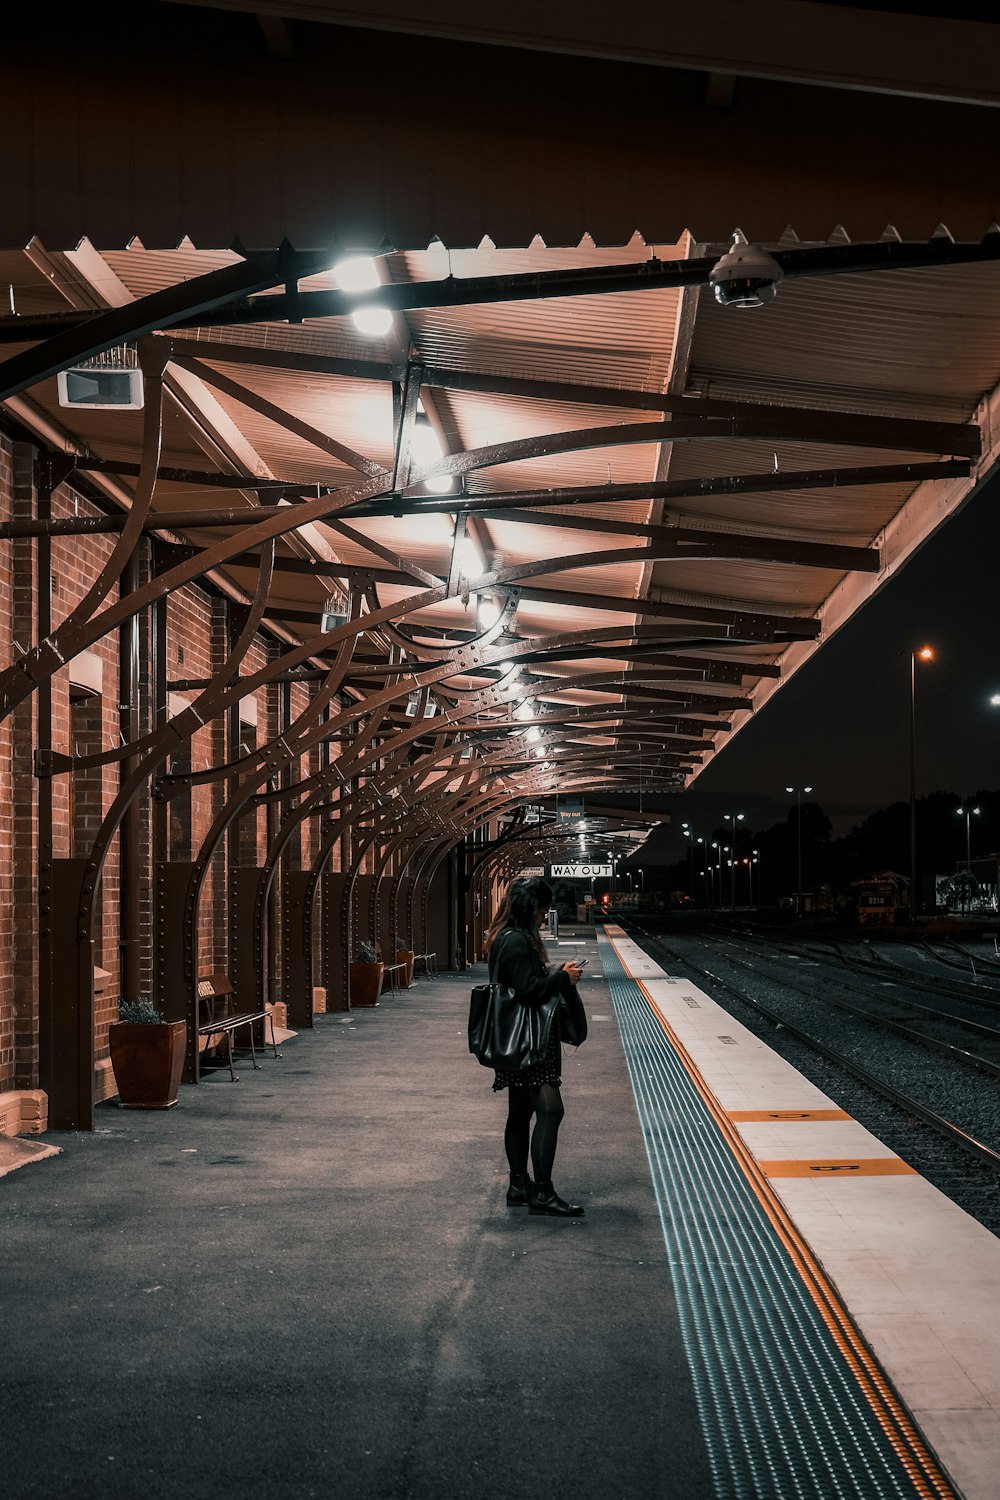 Una persona parada en una plataforma